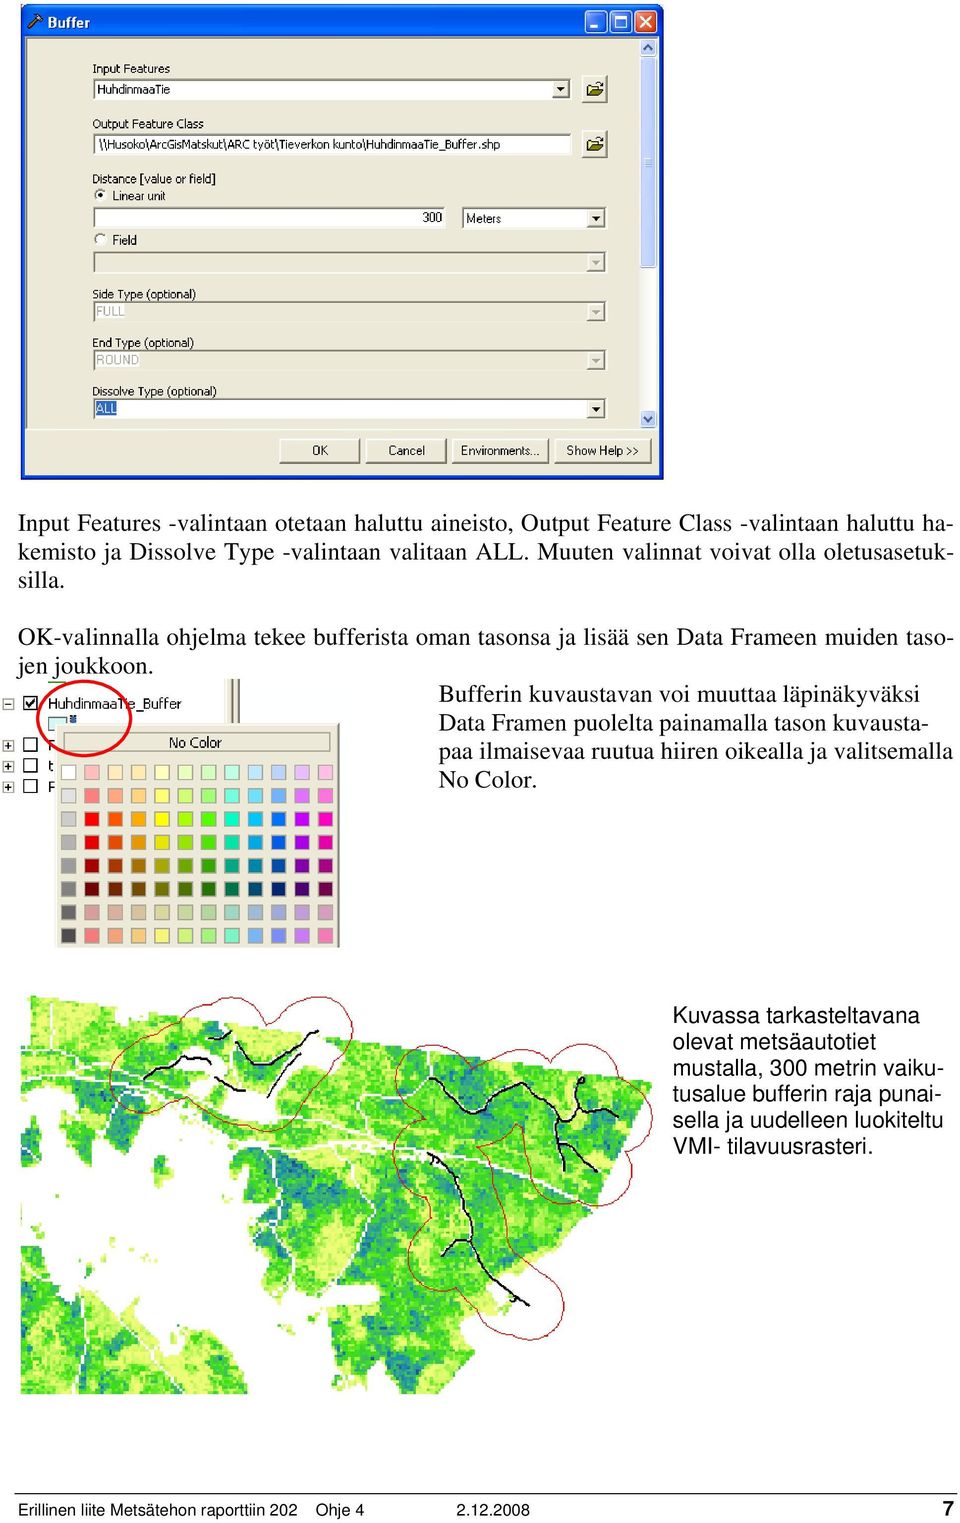 Bufferin kuvaustavan voi muuttaa läpinäkyväksi Data Framen puolelta painamalla tason kuvaustapaa ilmaisevaa ruutua hiiren oikealla ja valitsemalla No Color.